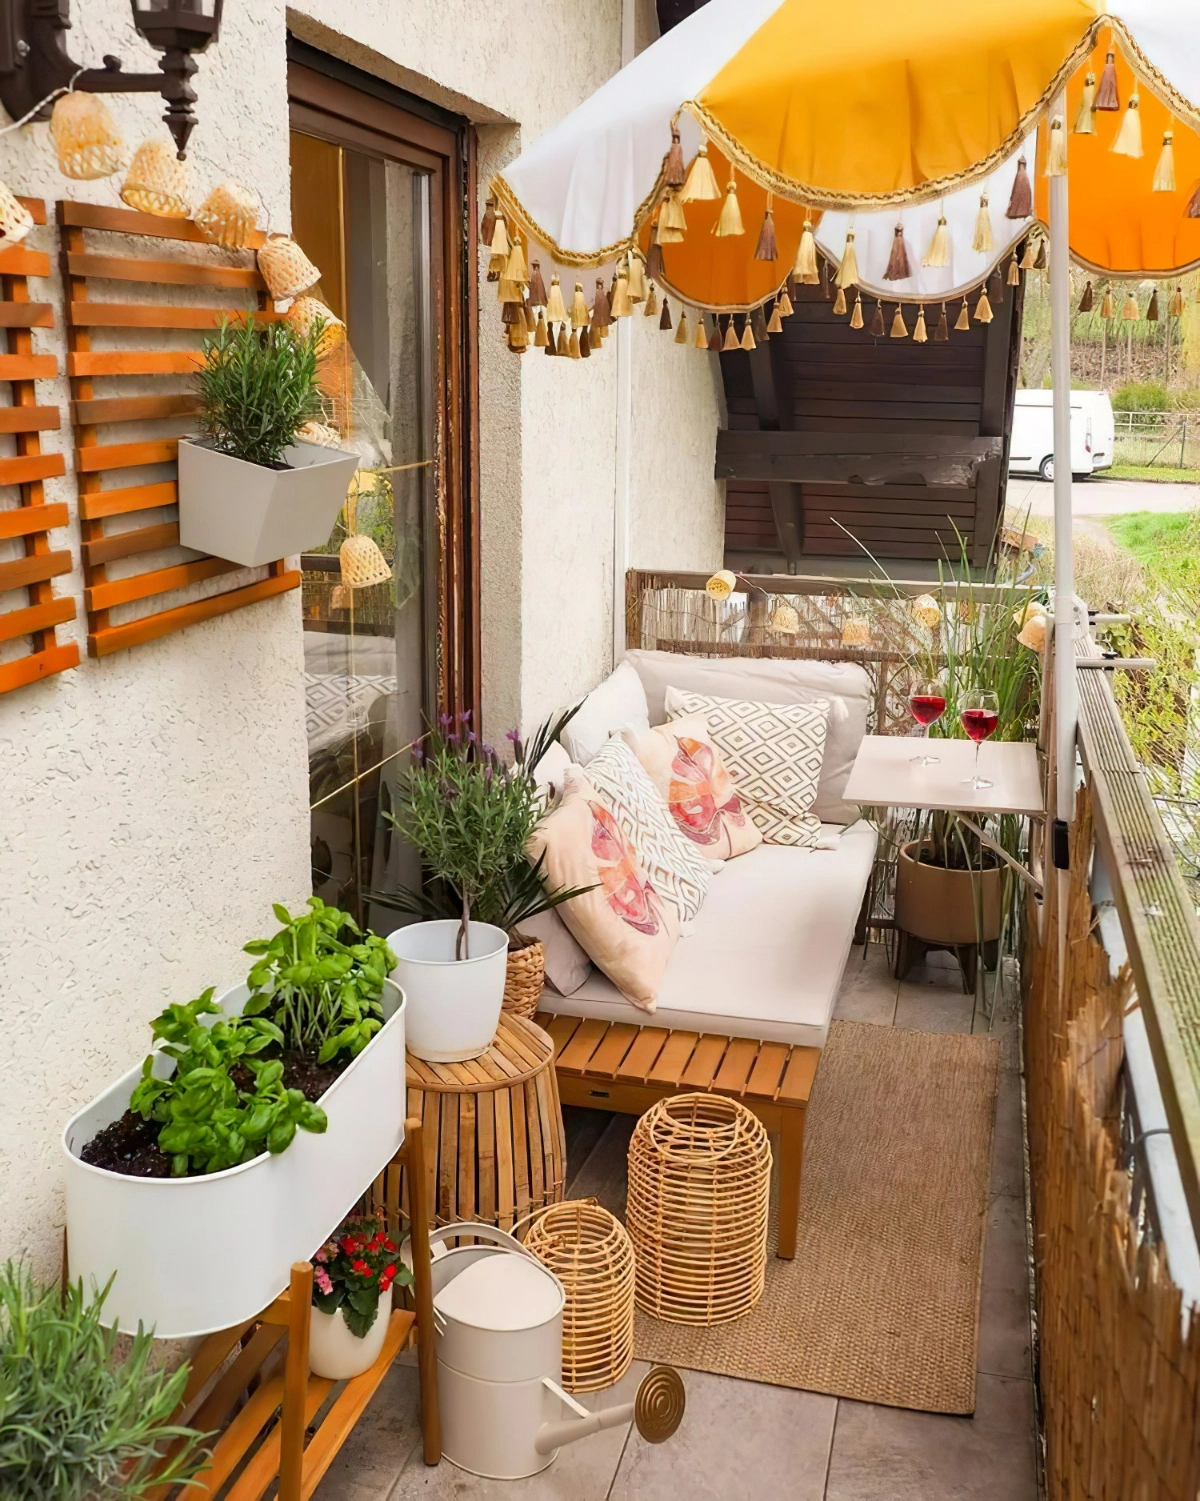 terrasse sichtschutz ideen regenschirm sonnernschirm kleiner balkon dekorieren